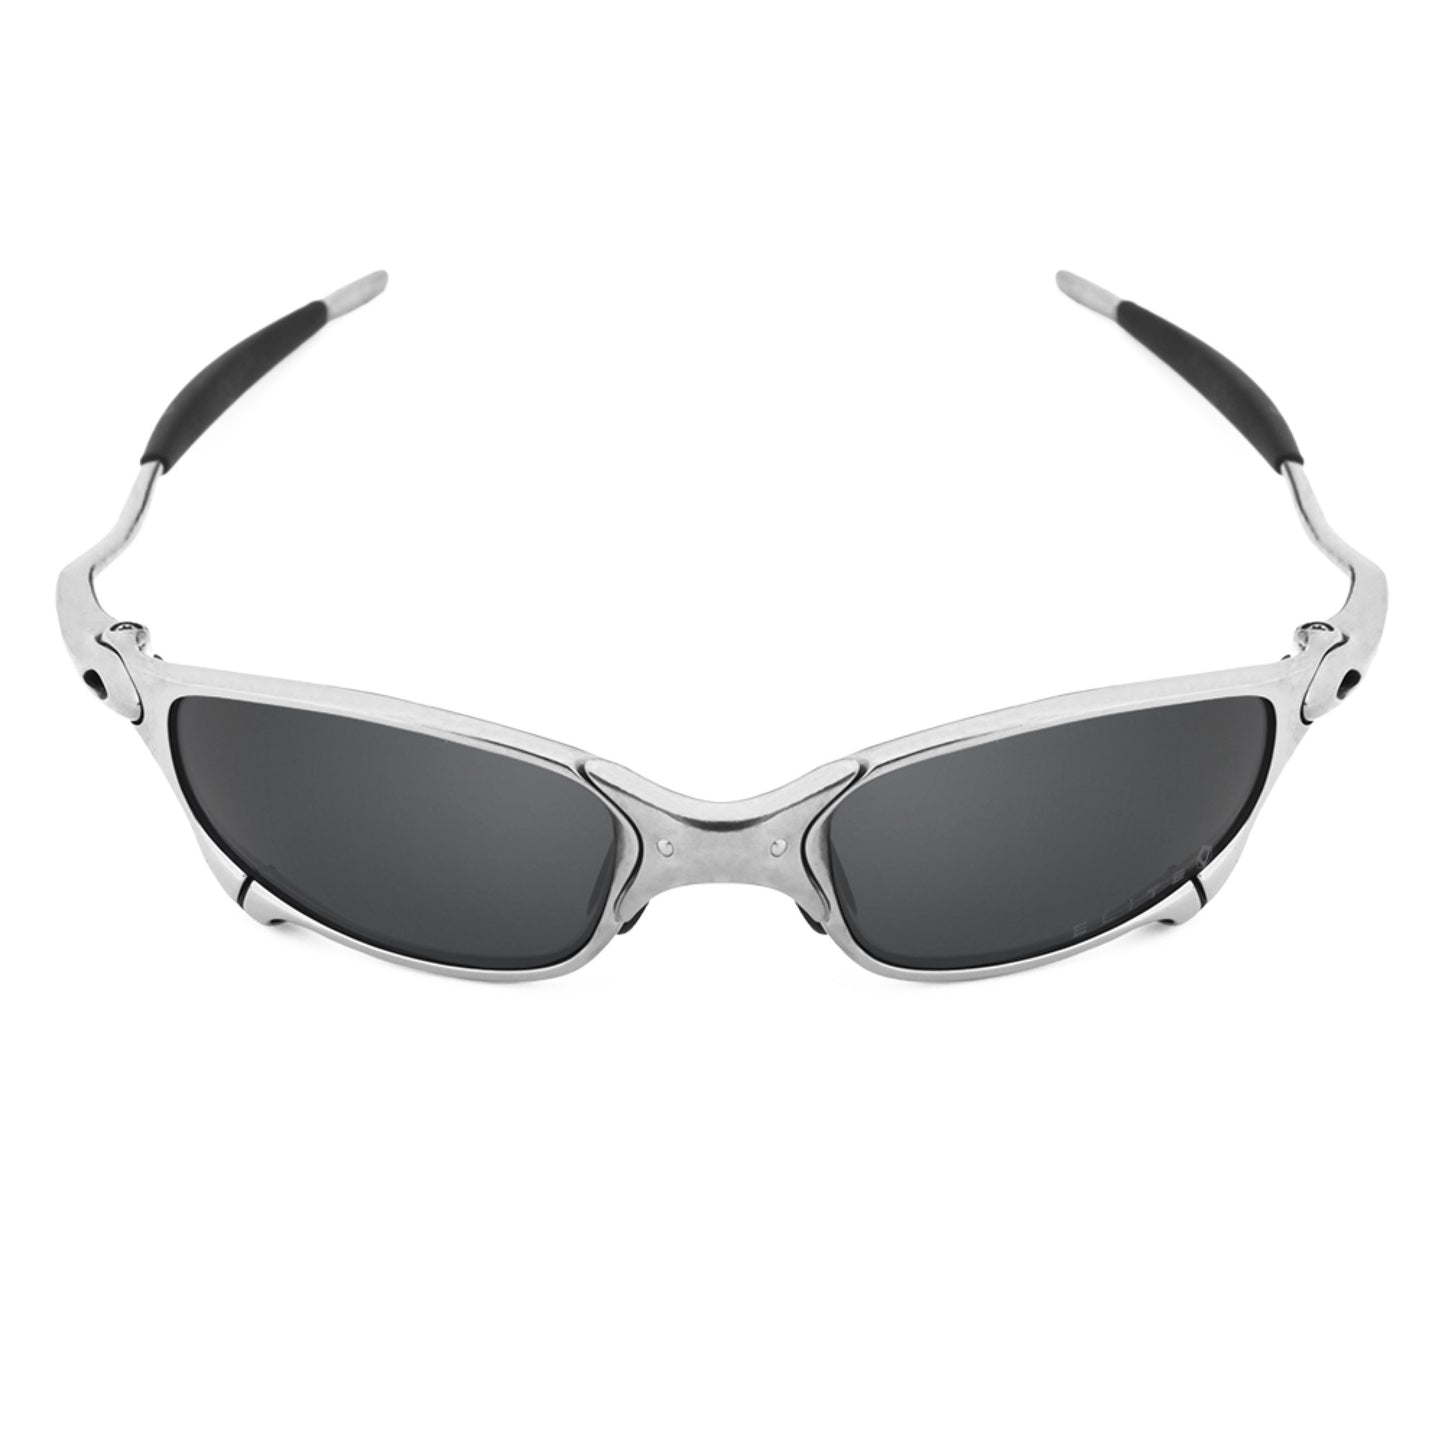 Revant black rubber kit installed on Oakley Juliet sunglasses